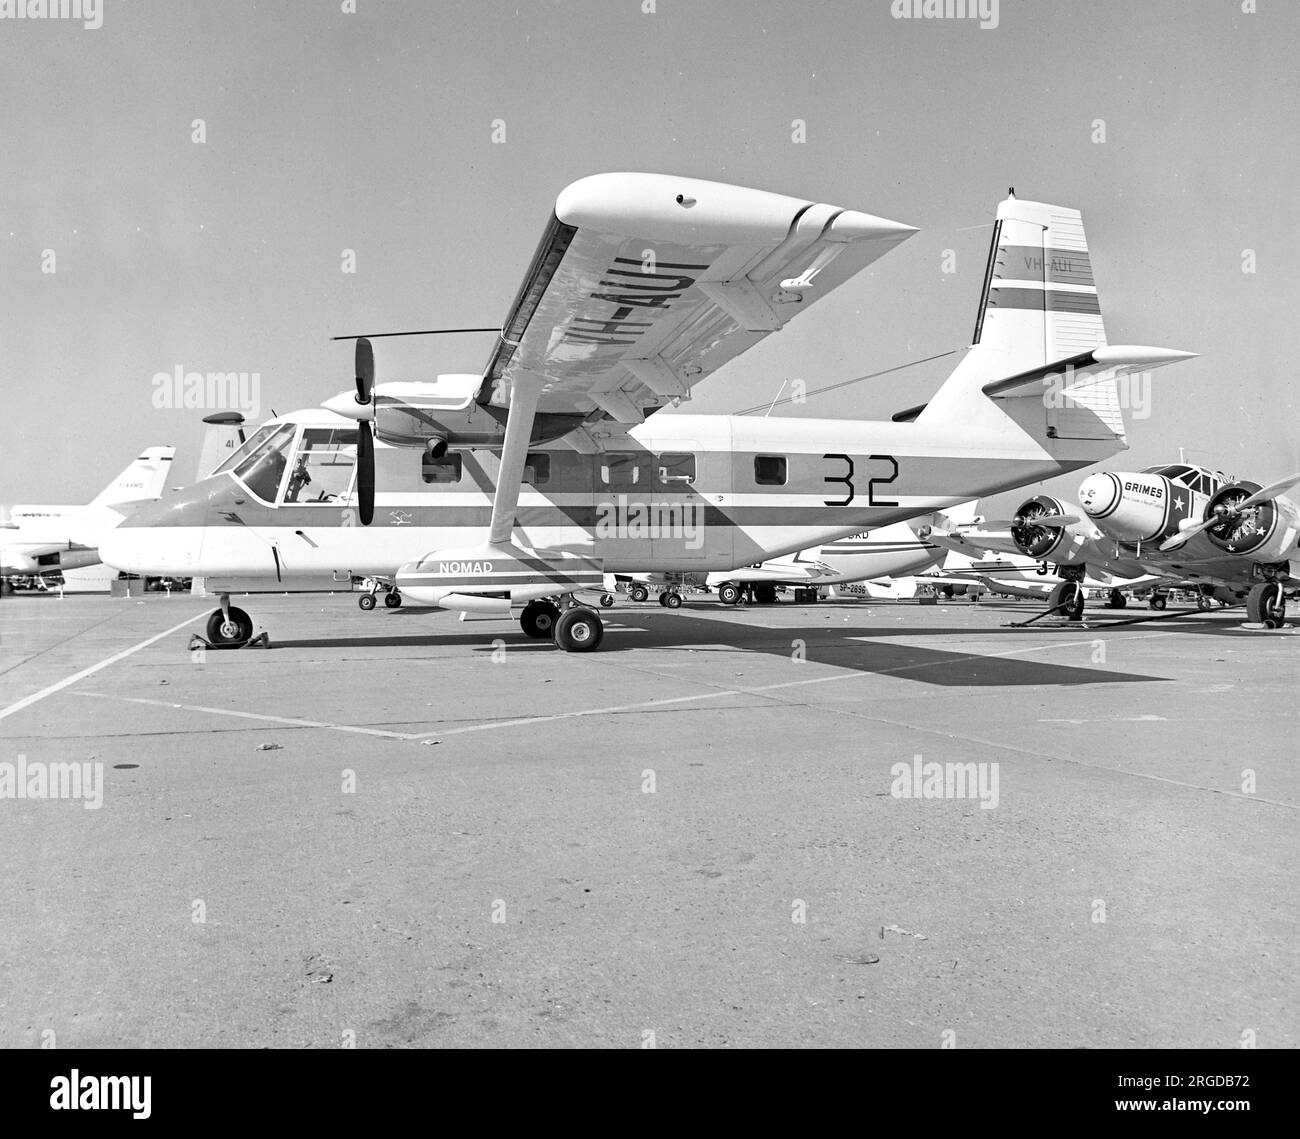 Staatliche Flugzeugfabriken GAF N-22 Nomad VH-AUI (msn 1), der erste Nomad, in Le Bourget für die Paris Air Show im Juni 1975, mit Airshow Serie '32'. Dieses Flugzeug wurde am 26. Oktober 1975 am Mazatlan Airport, Mexiko, wegen eines Vorfalls am Boden abgeschrieben. Stockfoto